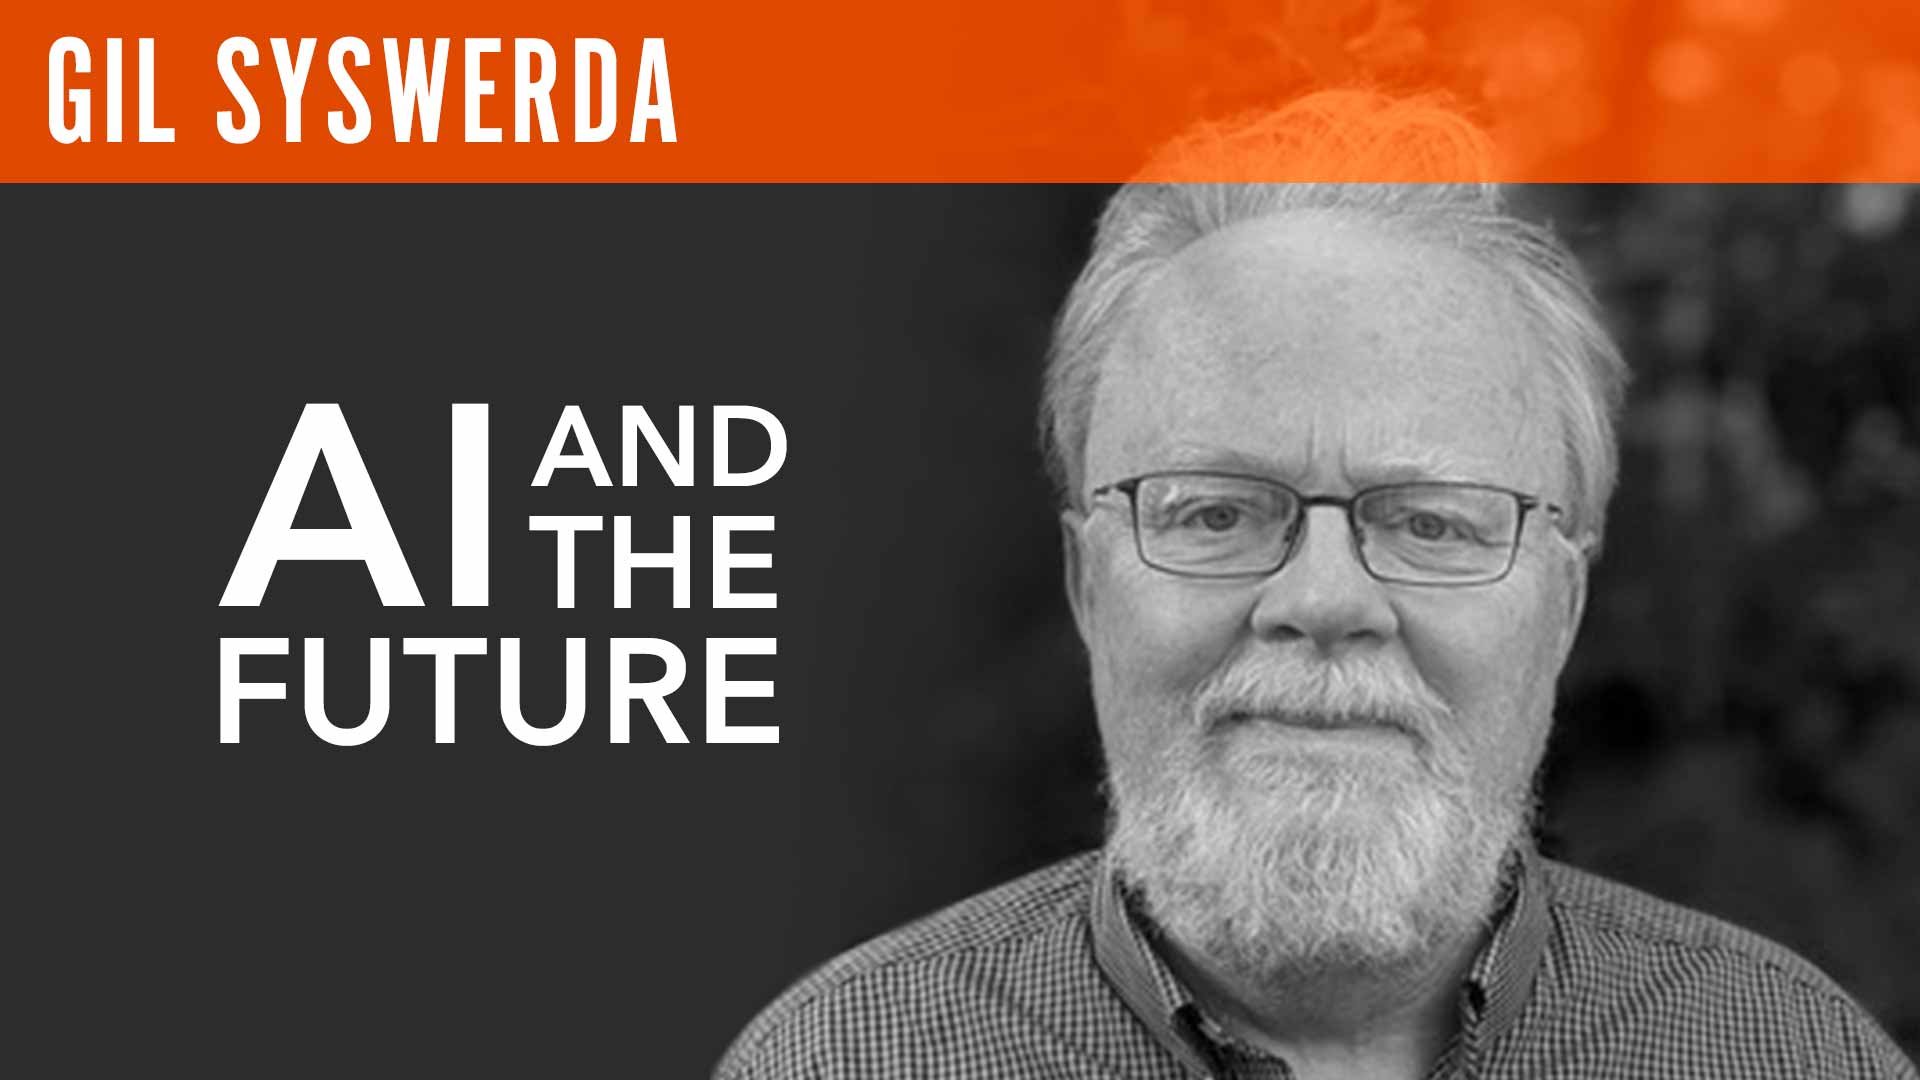 Gil Syswerda, "AI & the Future"